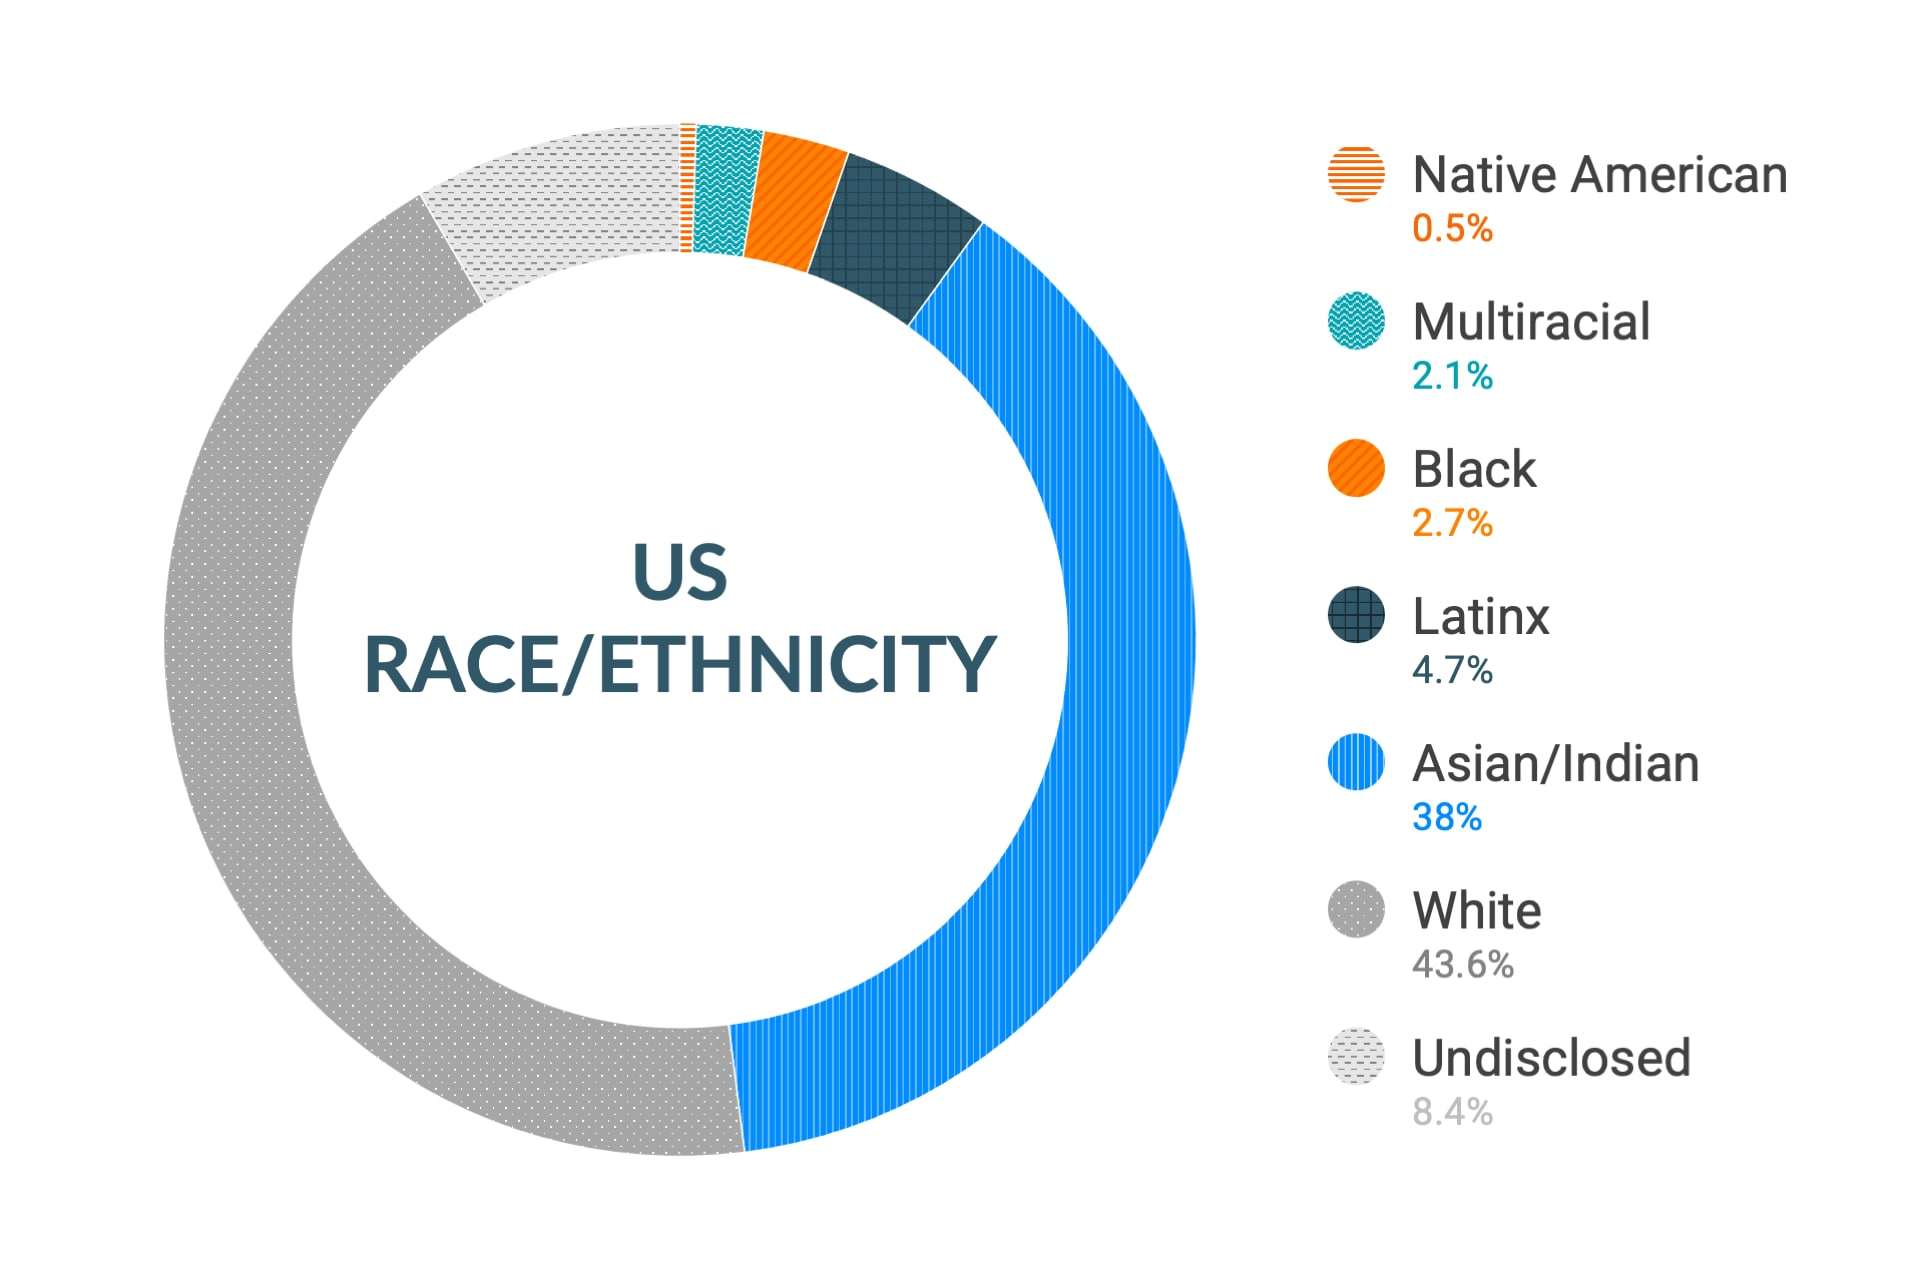 미국 지역 인종 및 민족에 대한 Cloudera의 다양성 및 포용력 데이터: 아메리카 원주민 0.5%, 다인종 2.2%, 흑인 2.8%, 라틴계 4.9%, 아시아인 및 인도인 36.4%, 백인 44.6%, 비공개 8.4%